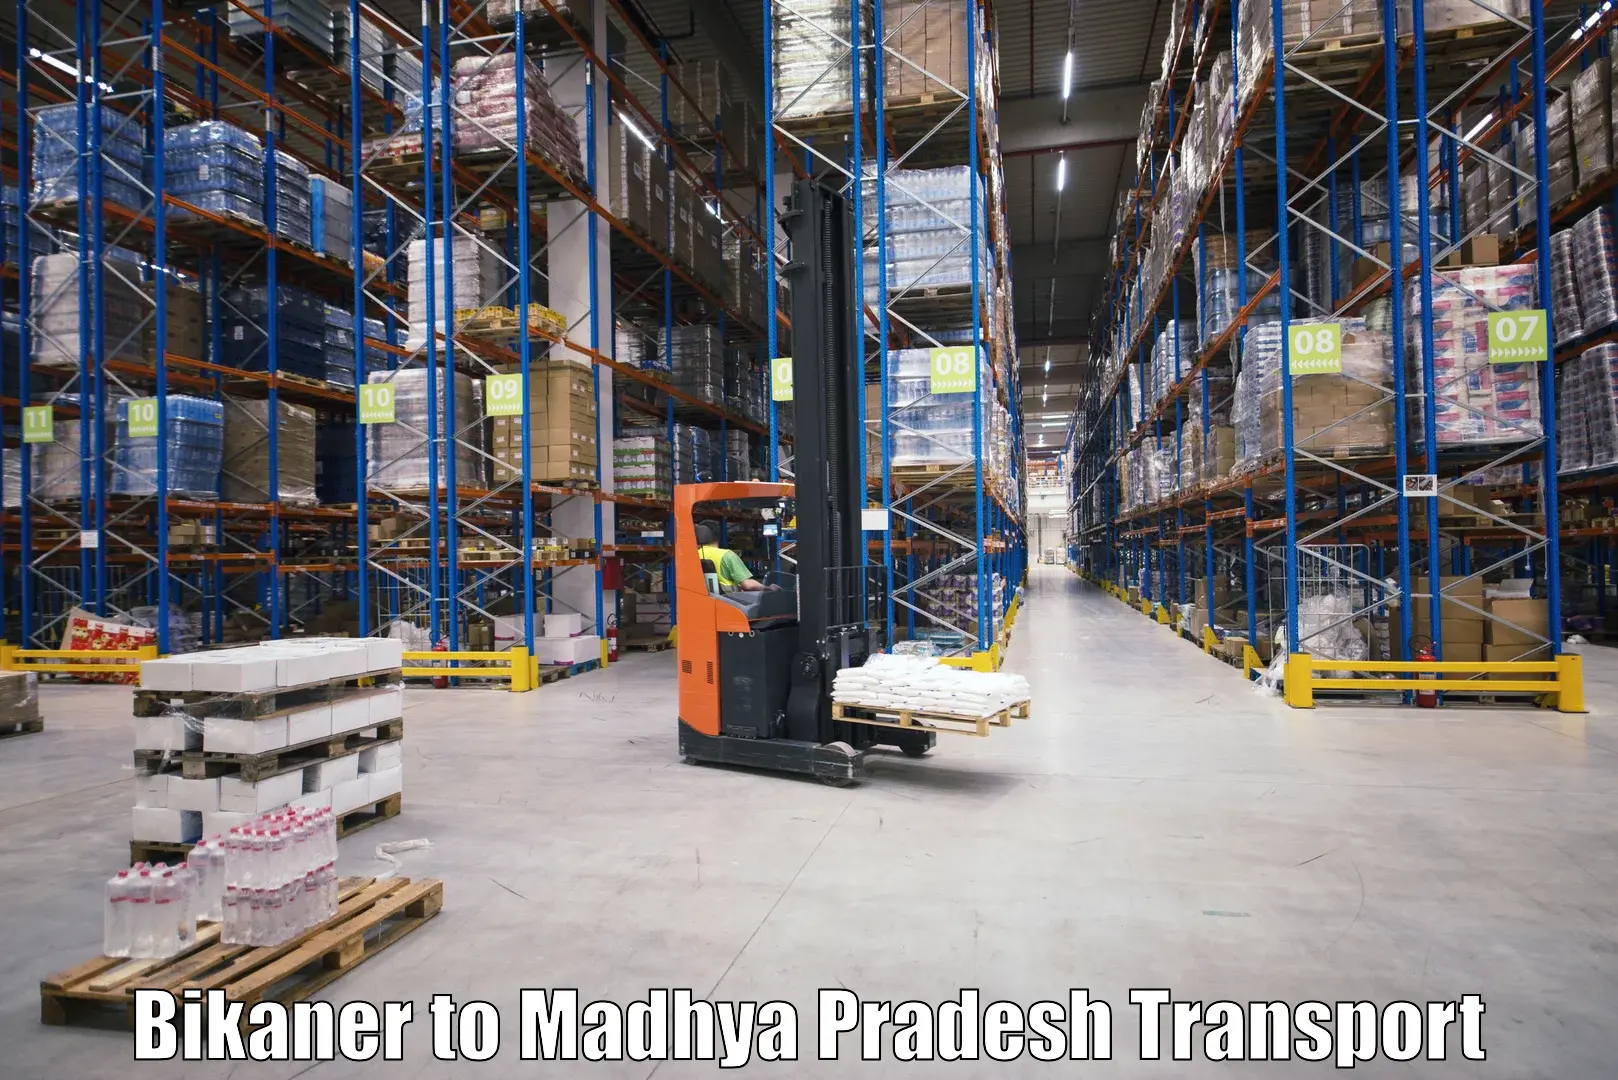 Truck transport companies in India Bikaner to Maheshwar